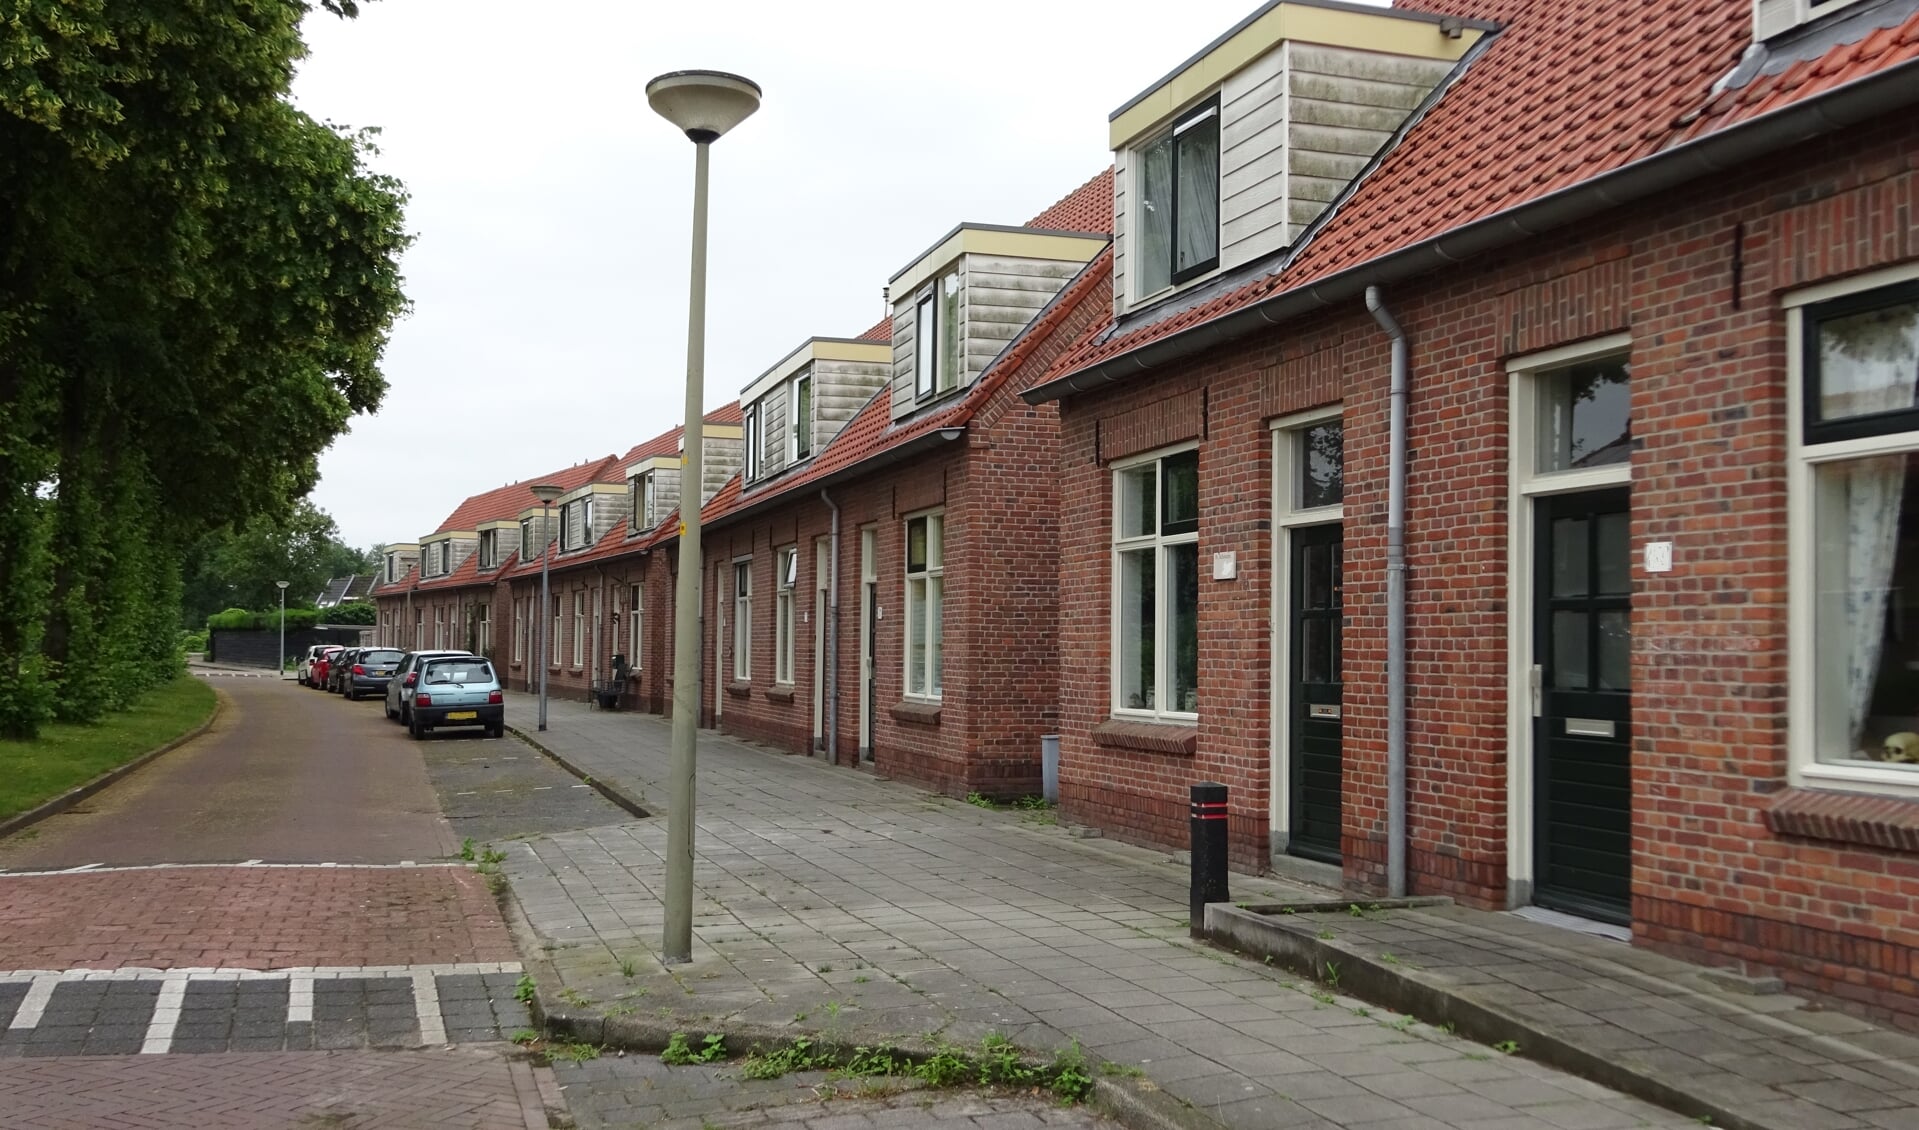 De Van Rensselaerstraat is één van tien straten waar in totaal vijftig vragenlijsten als kleine steekproef werden verspreid. Bijna twee derde kwam ingevuld terug.